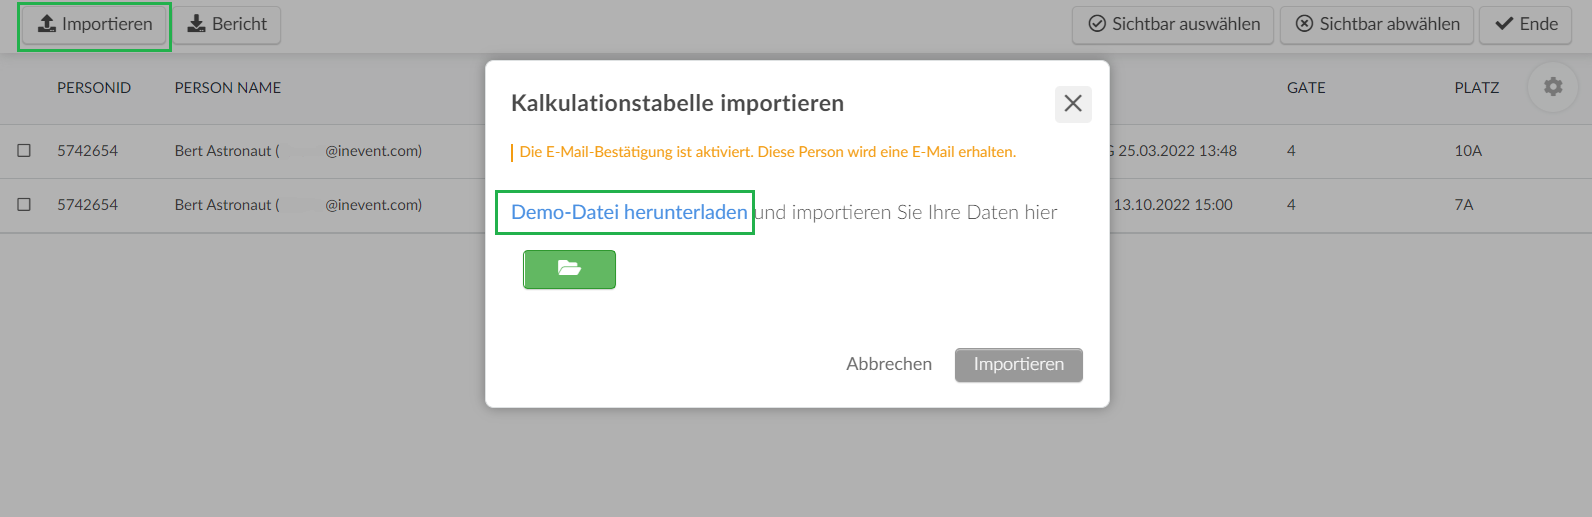 Screenshot of  Edit > Import > Download Demo File.